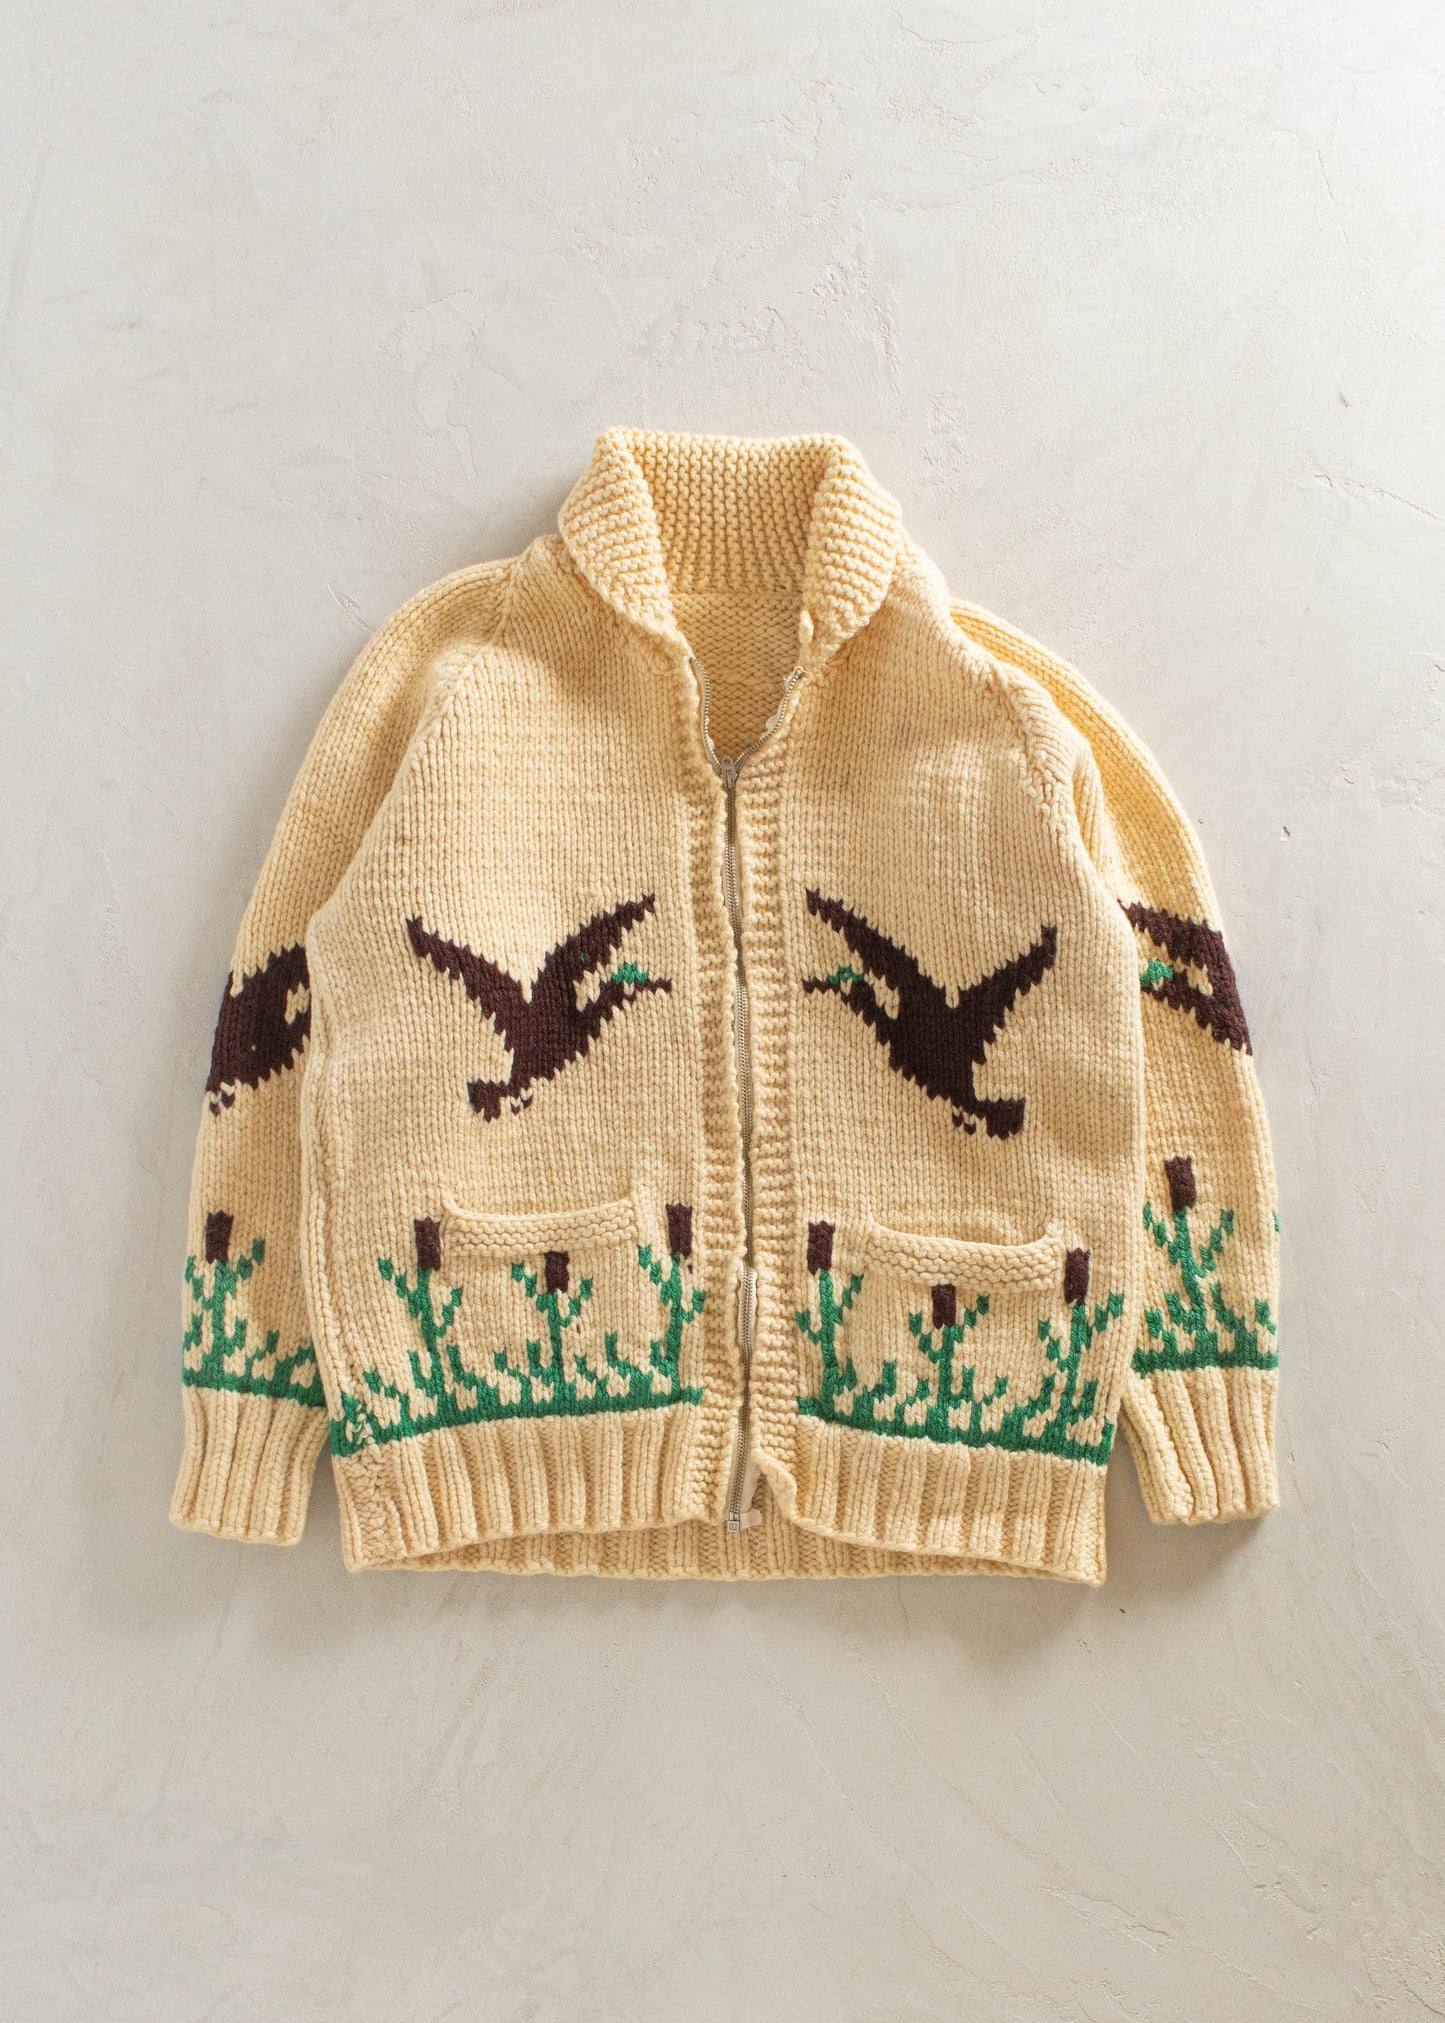 1980s Bird Pattern Cowichan Style Wool Cardigan Size M/L